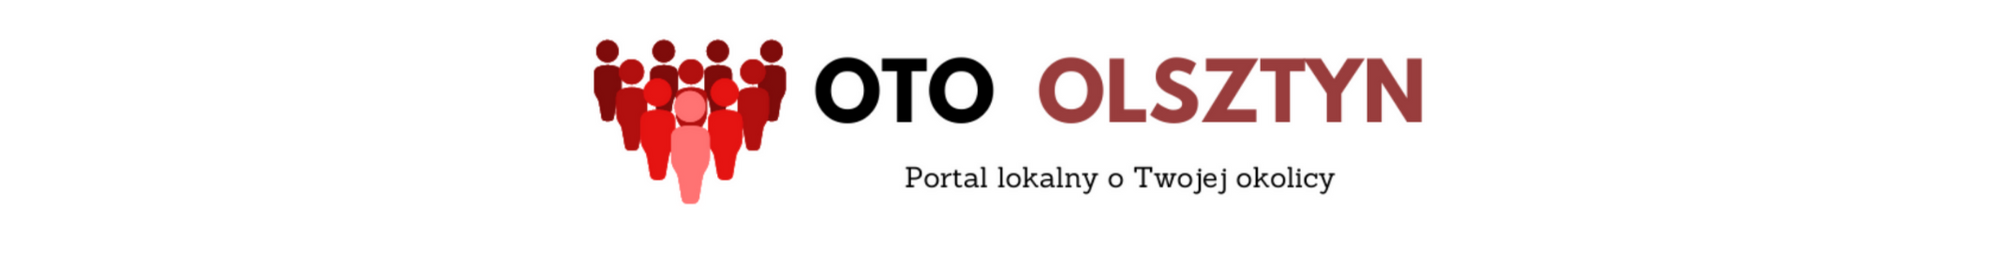 OtoOlsztyn – portal lokalny